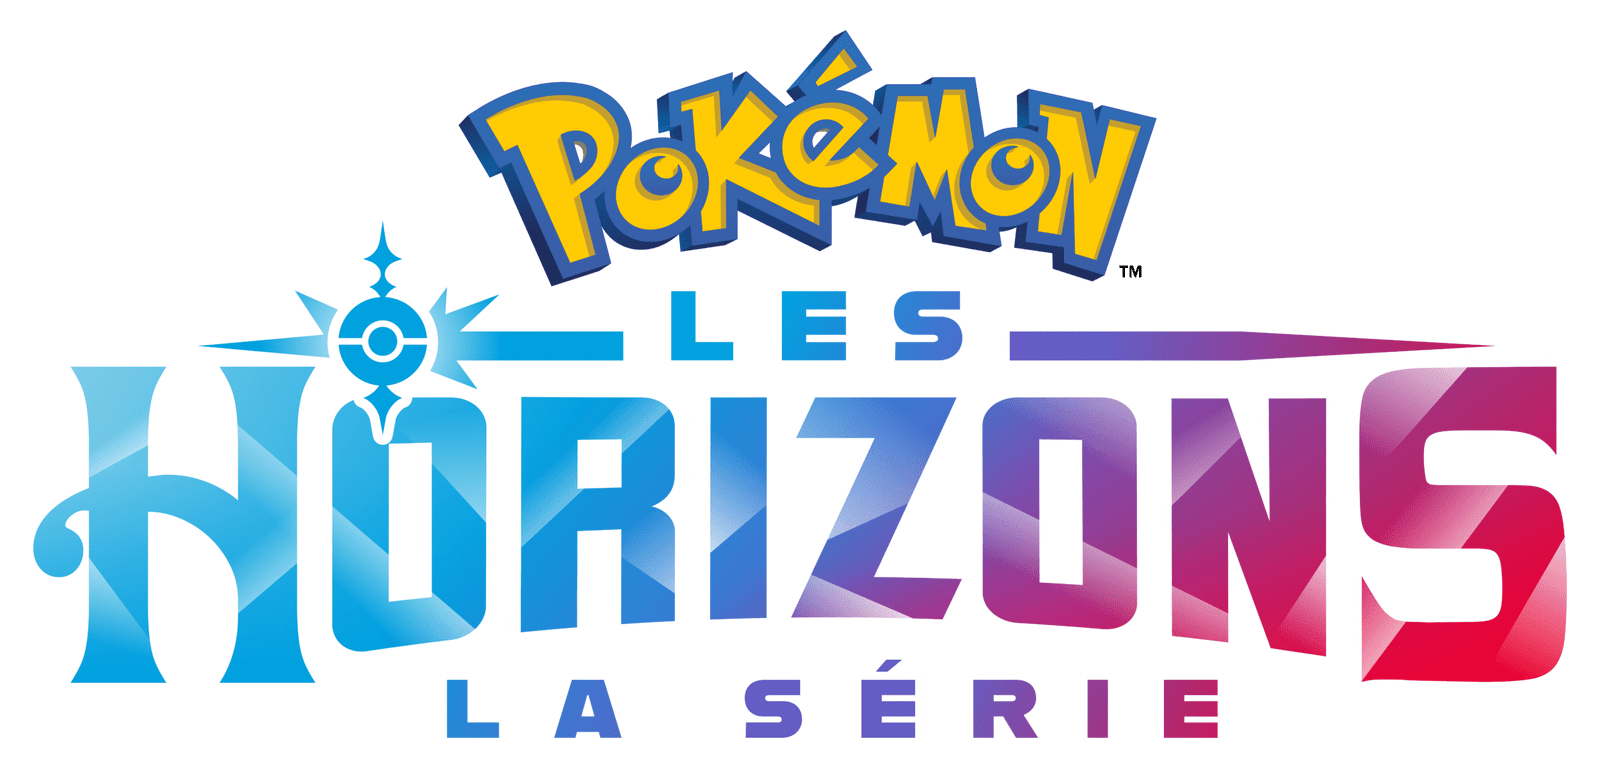 La série Pokémon, les horizons est (re)diffusée sur Gulli